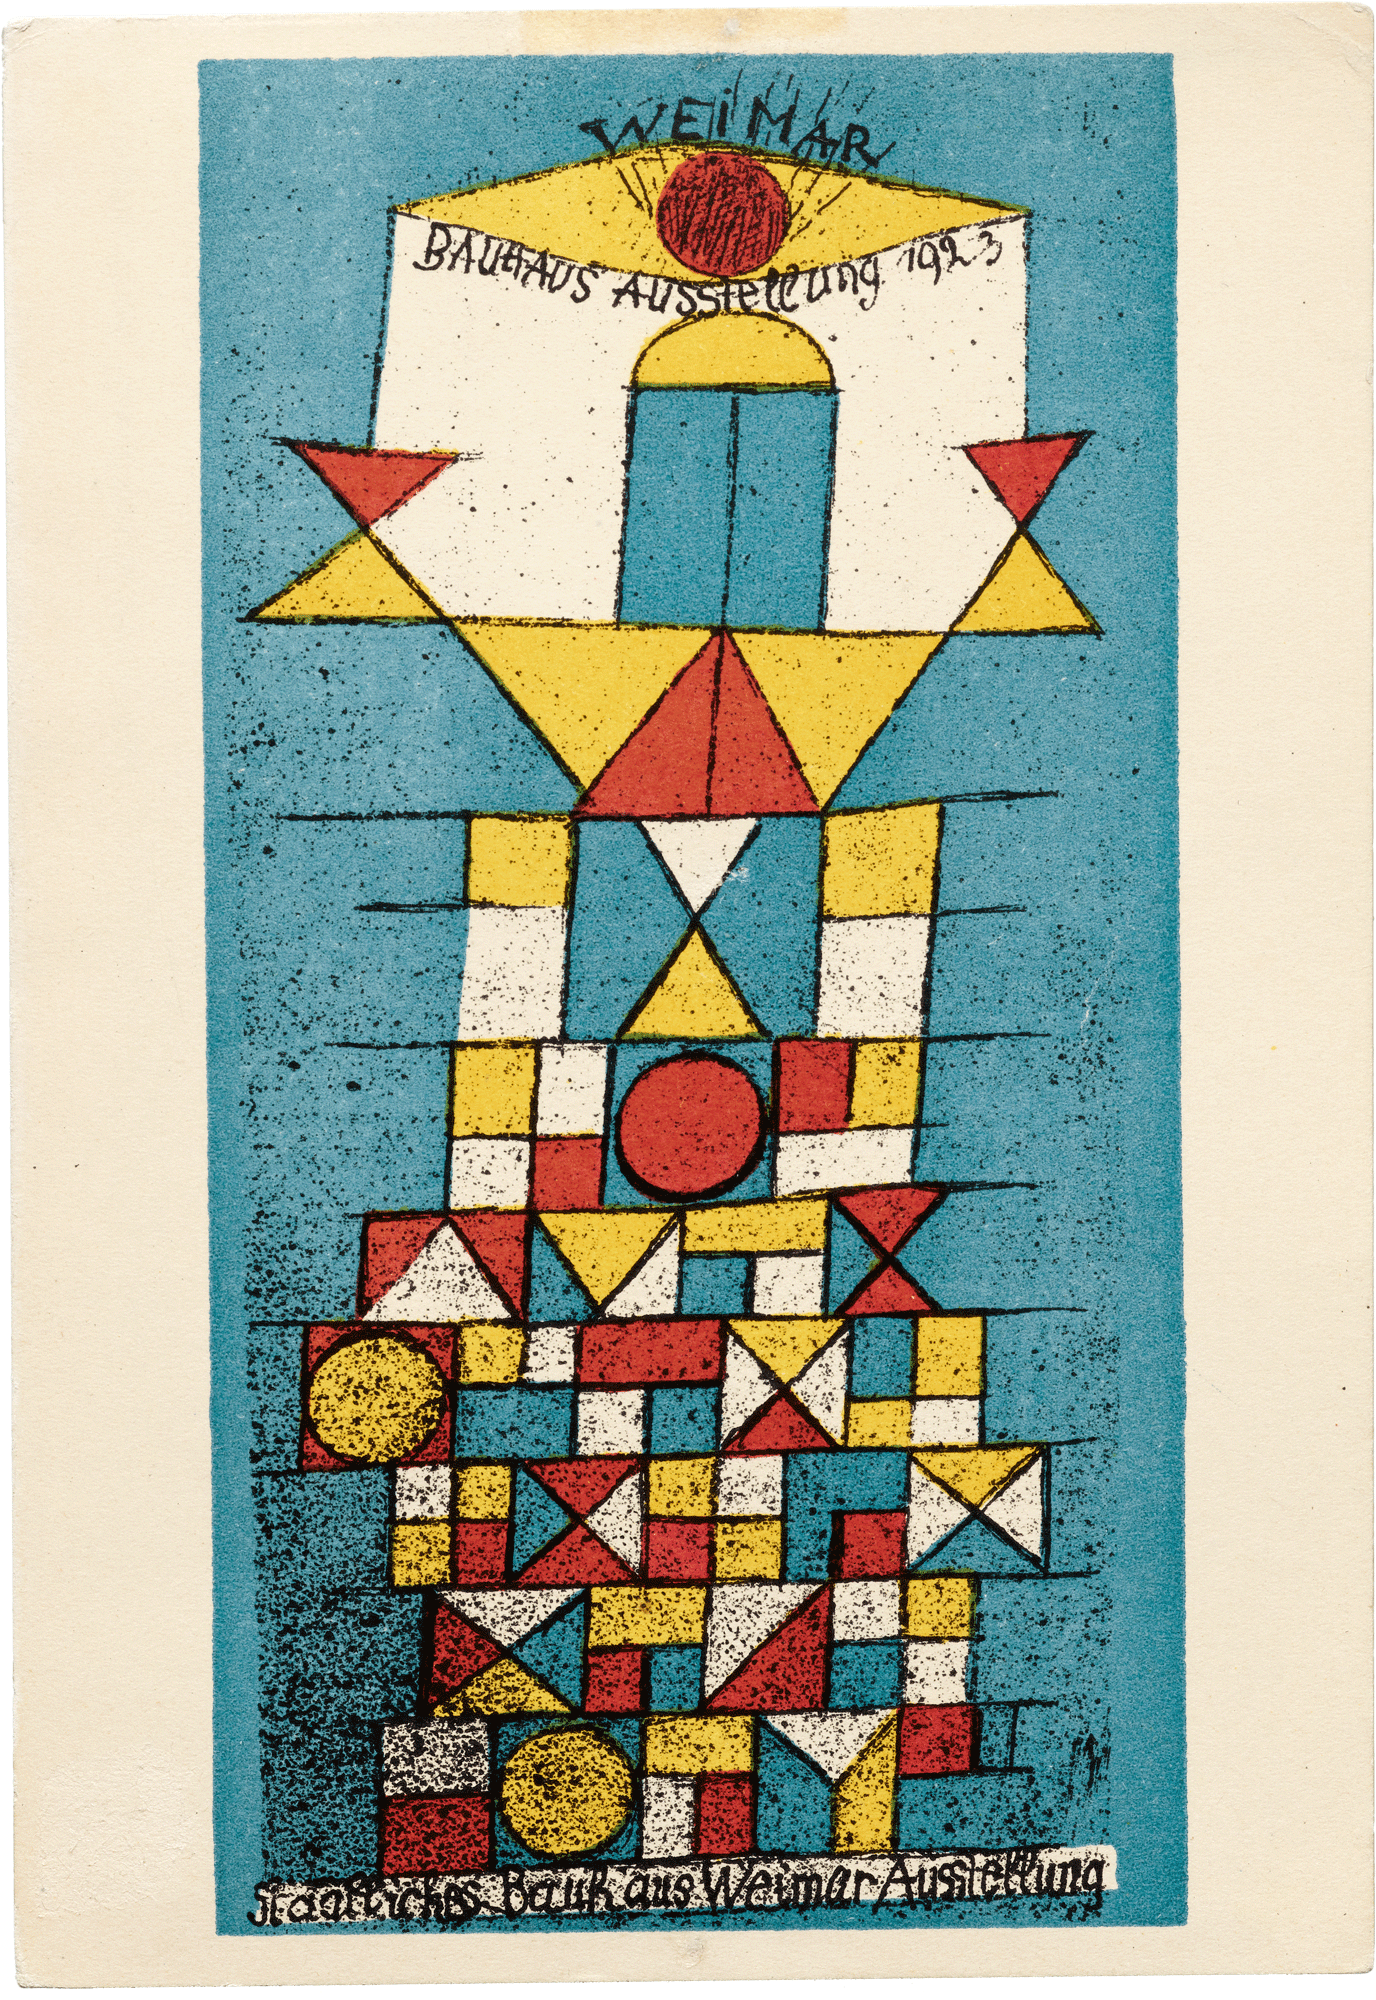 Postcard by Paul Klee